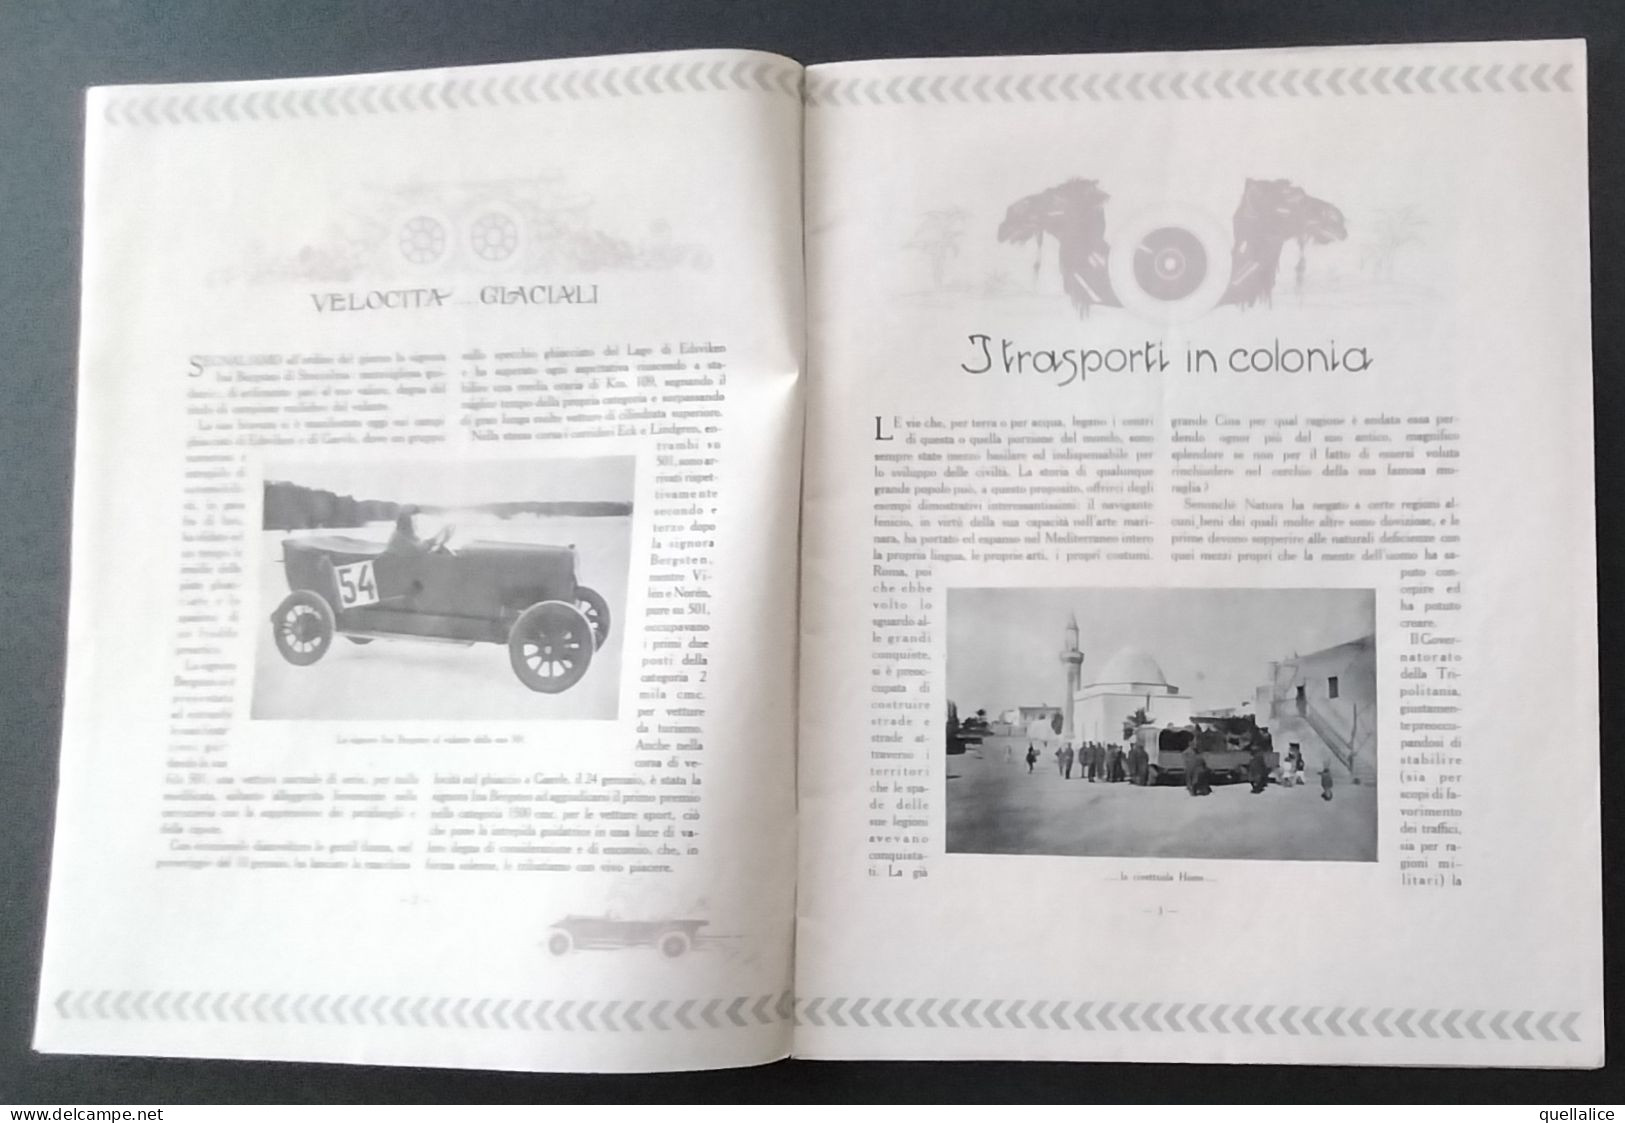 03931 "RIVISTA FIAT - GENNAIO/FEBBRA ANNO VII N. 1-2.1926 - LETTERA AL SENATORE AGNELLI DA G. D'ANNUNZIO" ORIG. - Engines